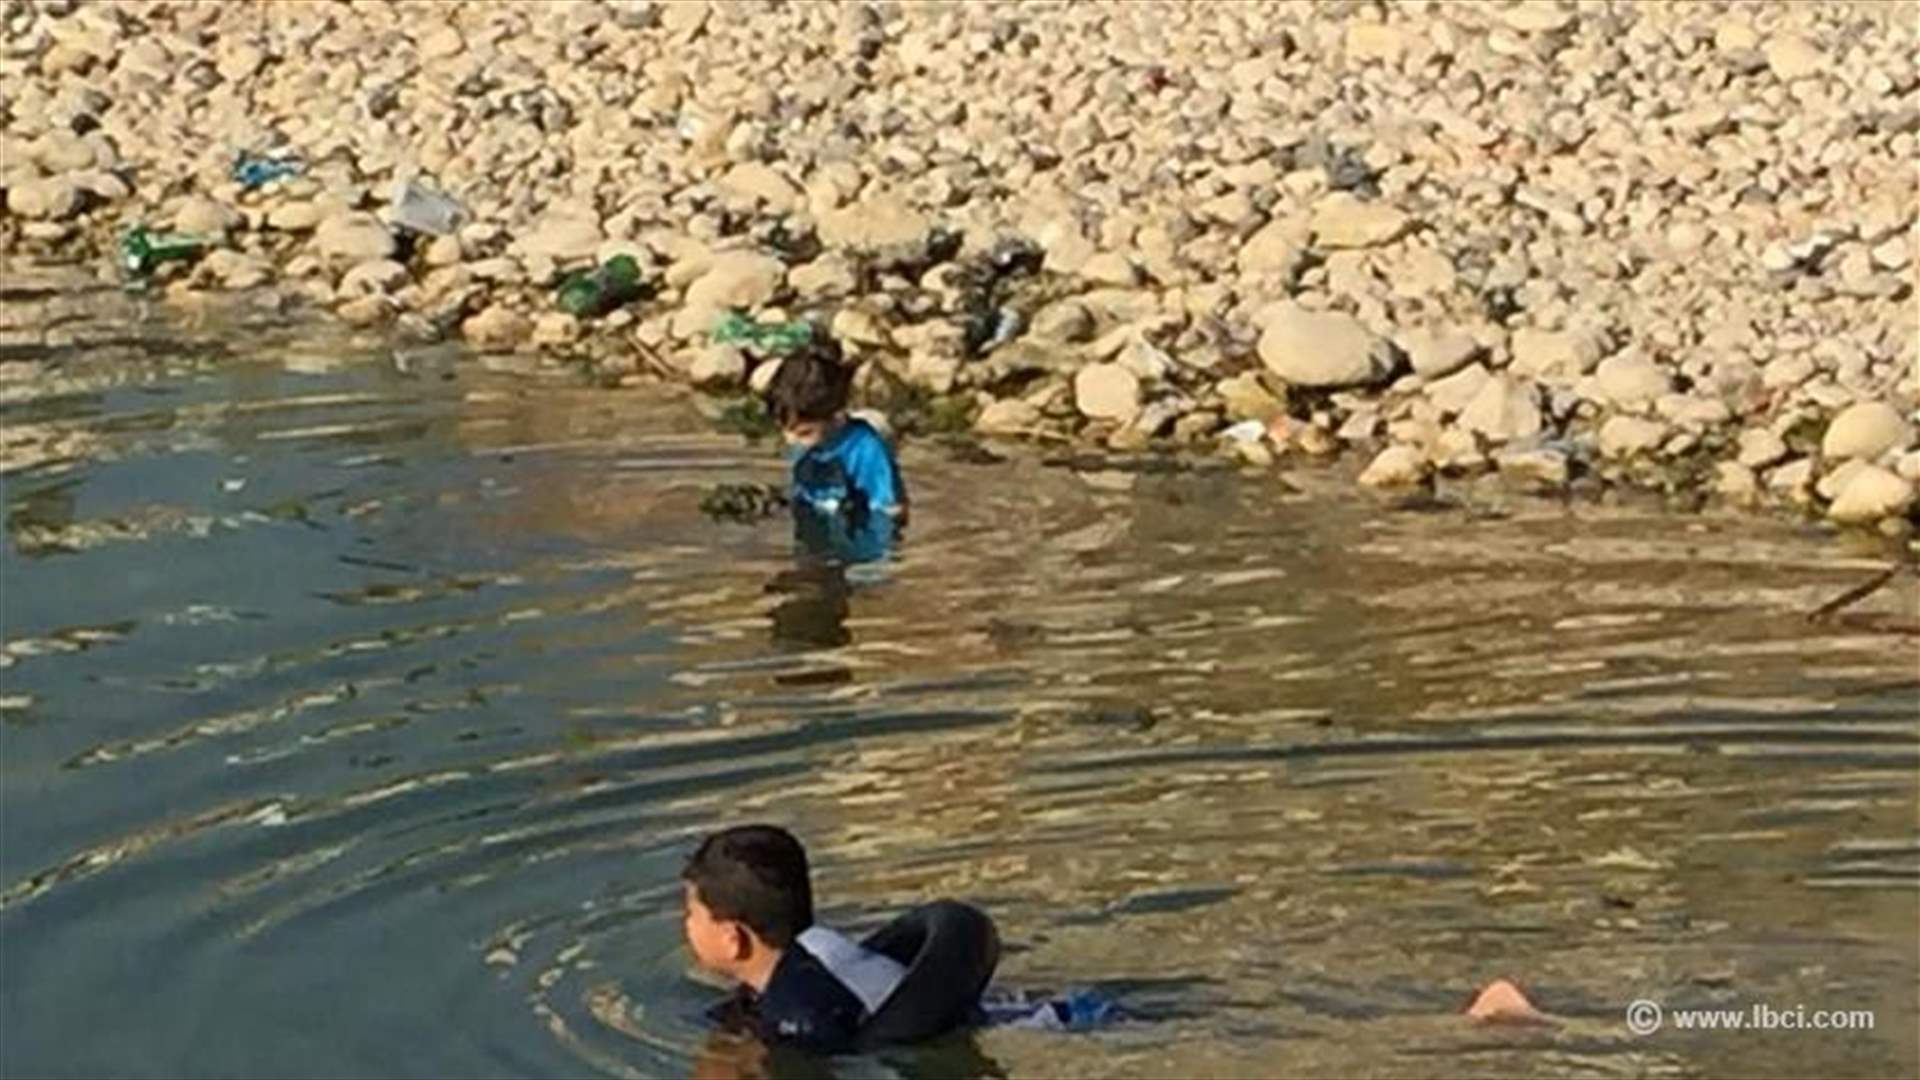 طفلان يسبحان في مستنقع مياه ملوث بالاوبئة والسموم... تحت أنظار الاهل!! (صور)